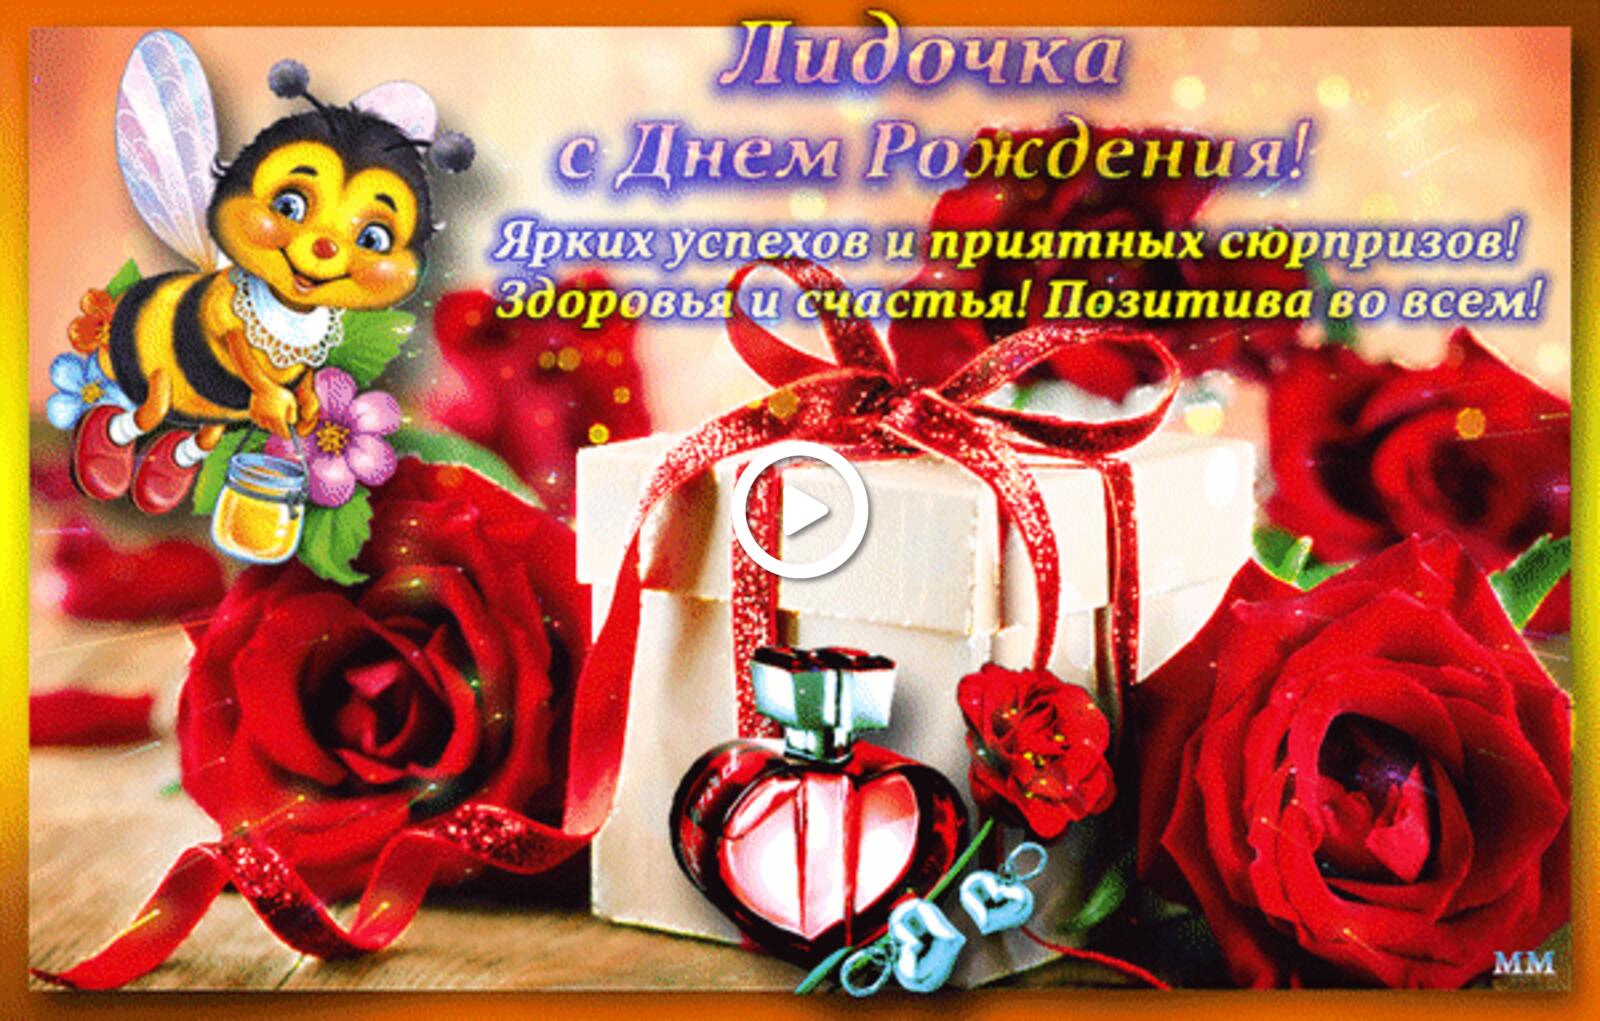 一张以生日快乐 玫瑰 馈赠为主题的明信片